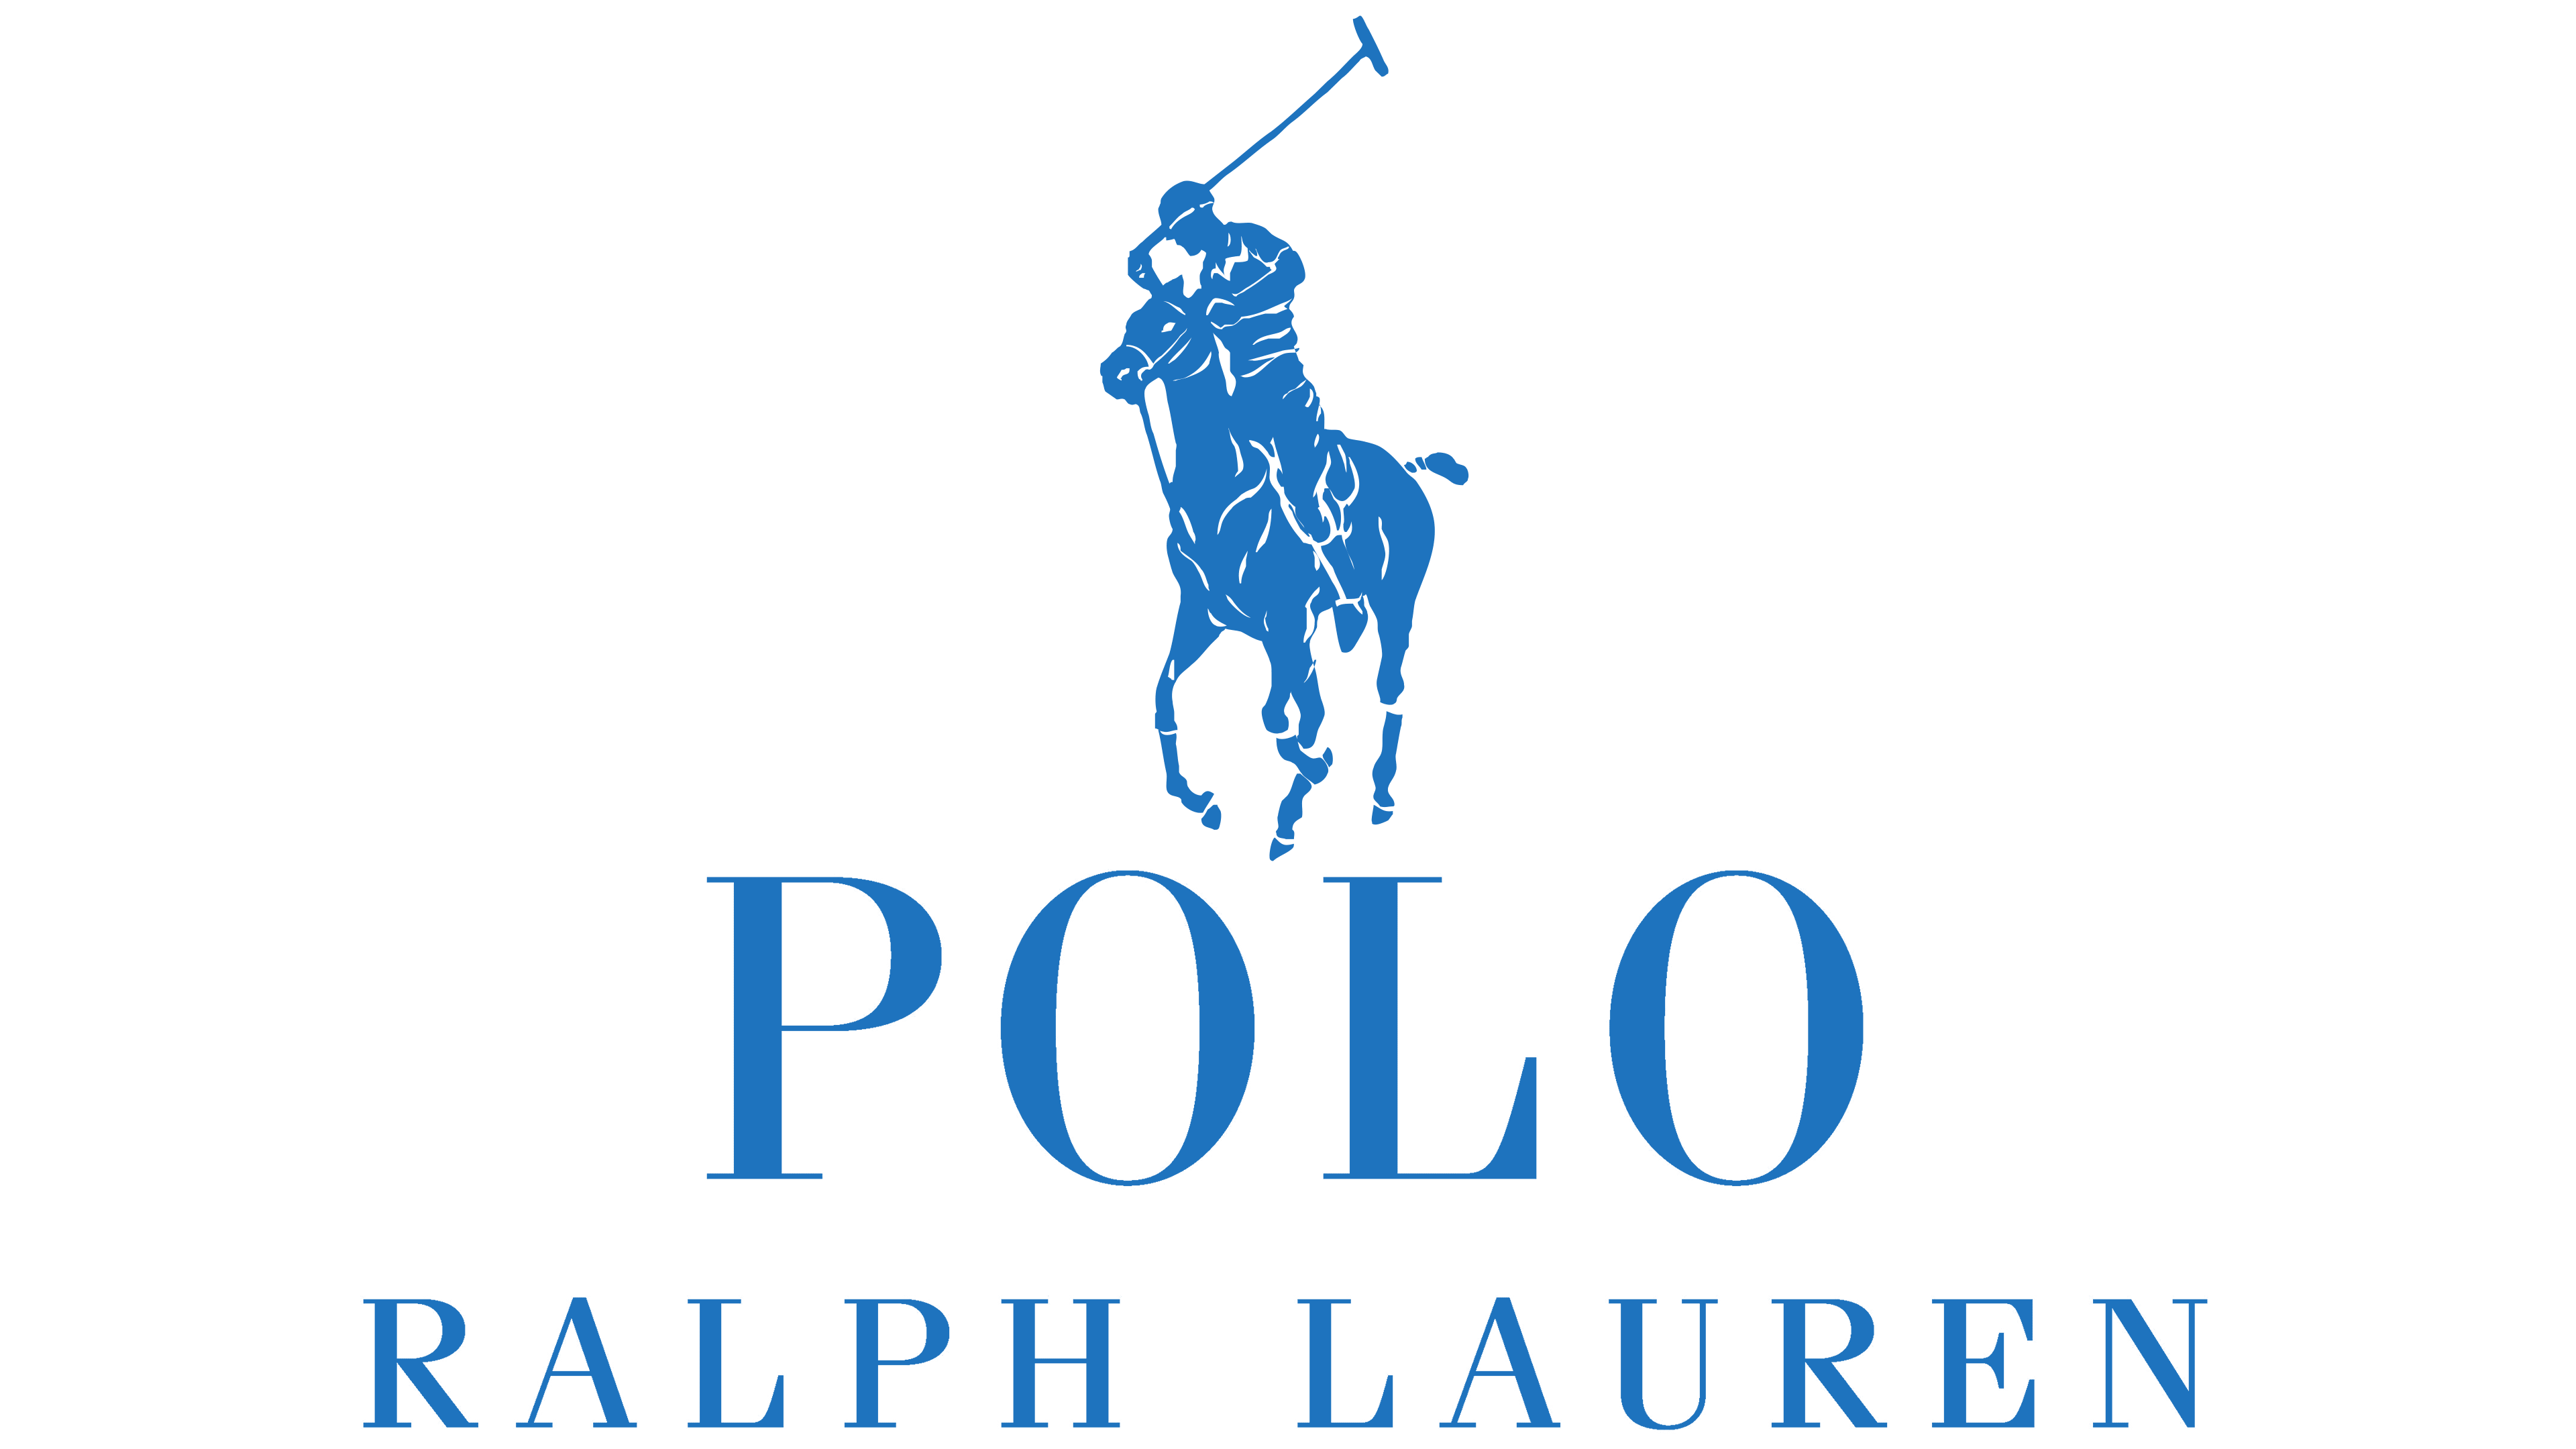 polo ralph lauren logo png